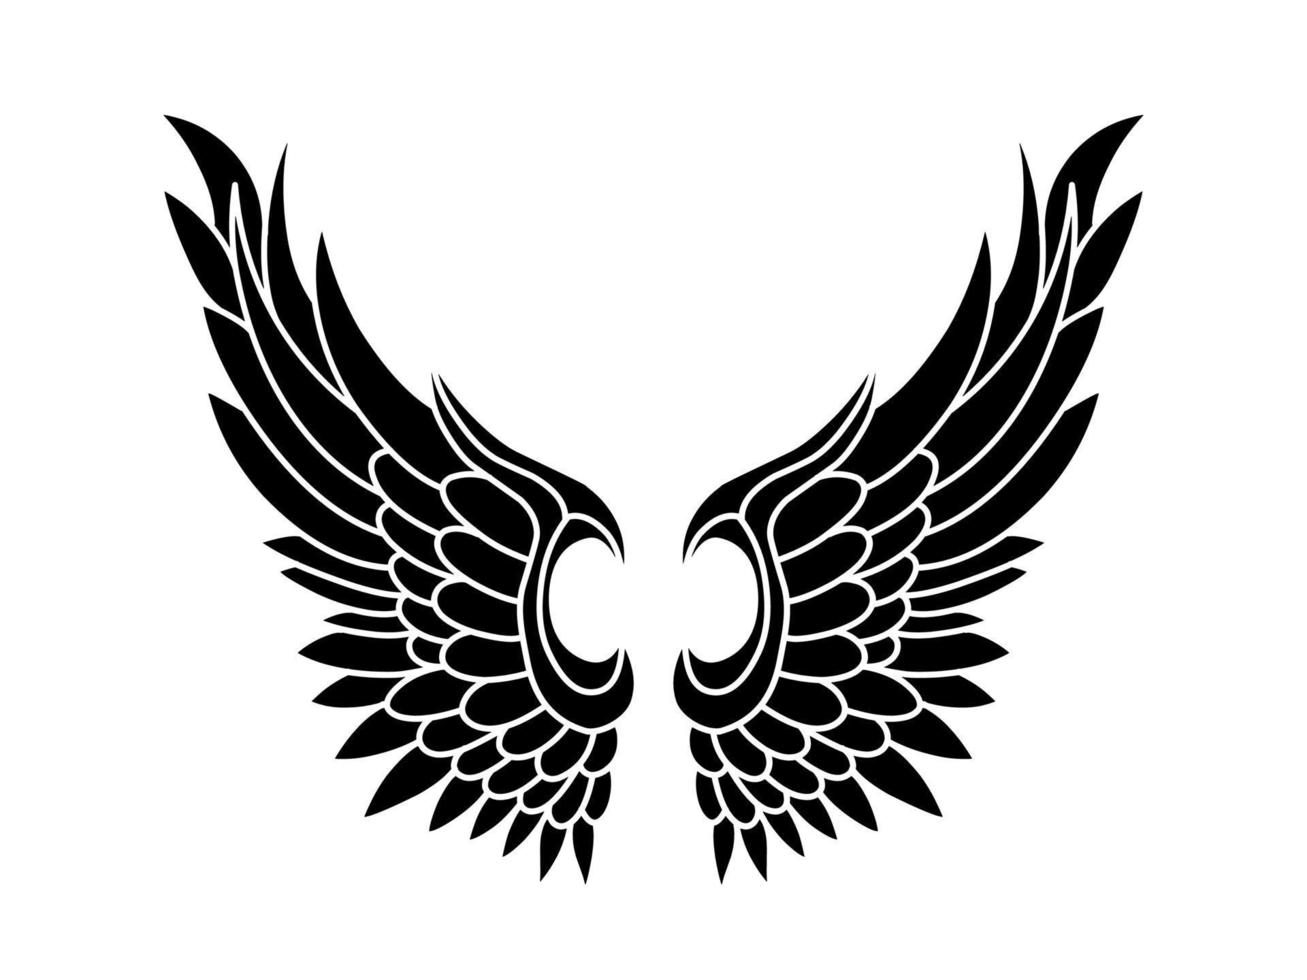 tatouage tribal ailes d'ange vecteur libre